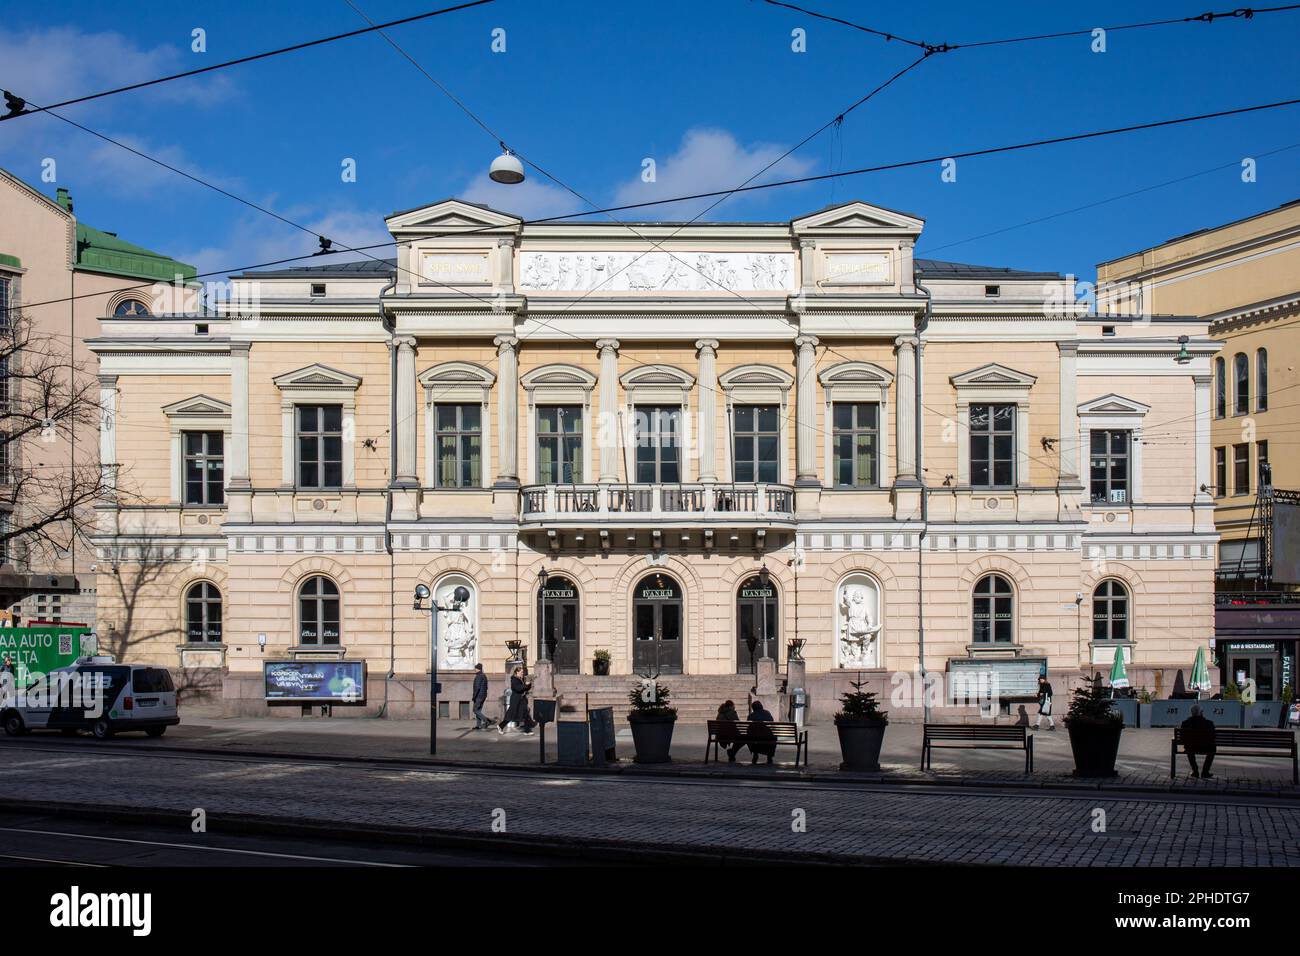 Vanha ylioppilastalo im Neorenaissance-Stil, entworfen von Axel Hampus Dalström und fertiggestellt im Jahr 1870, im Kluuvi-Viertel von Helsinki, Finnland Stockfoto